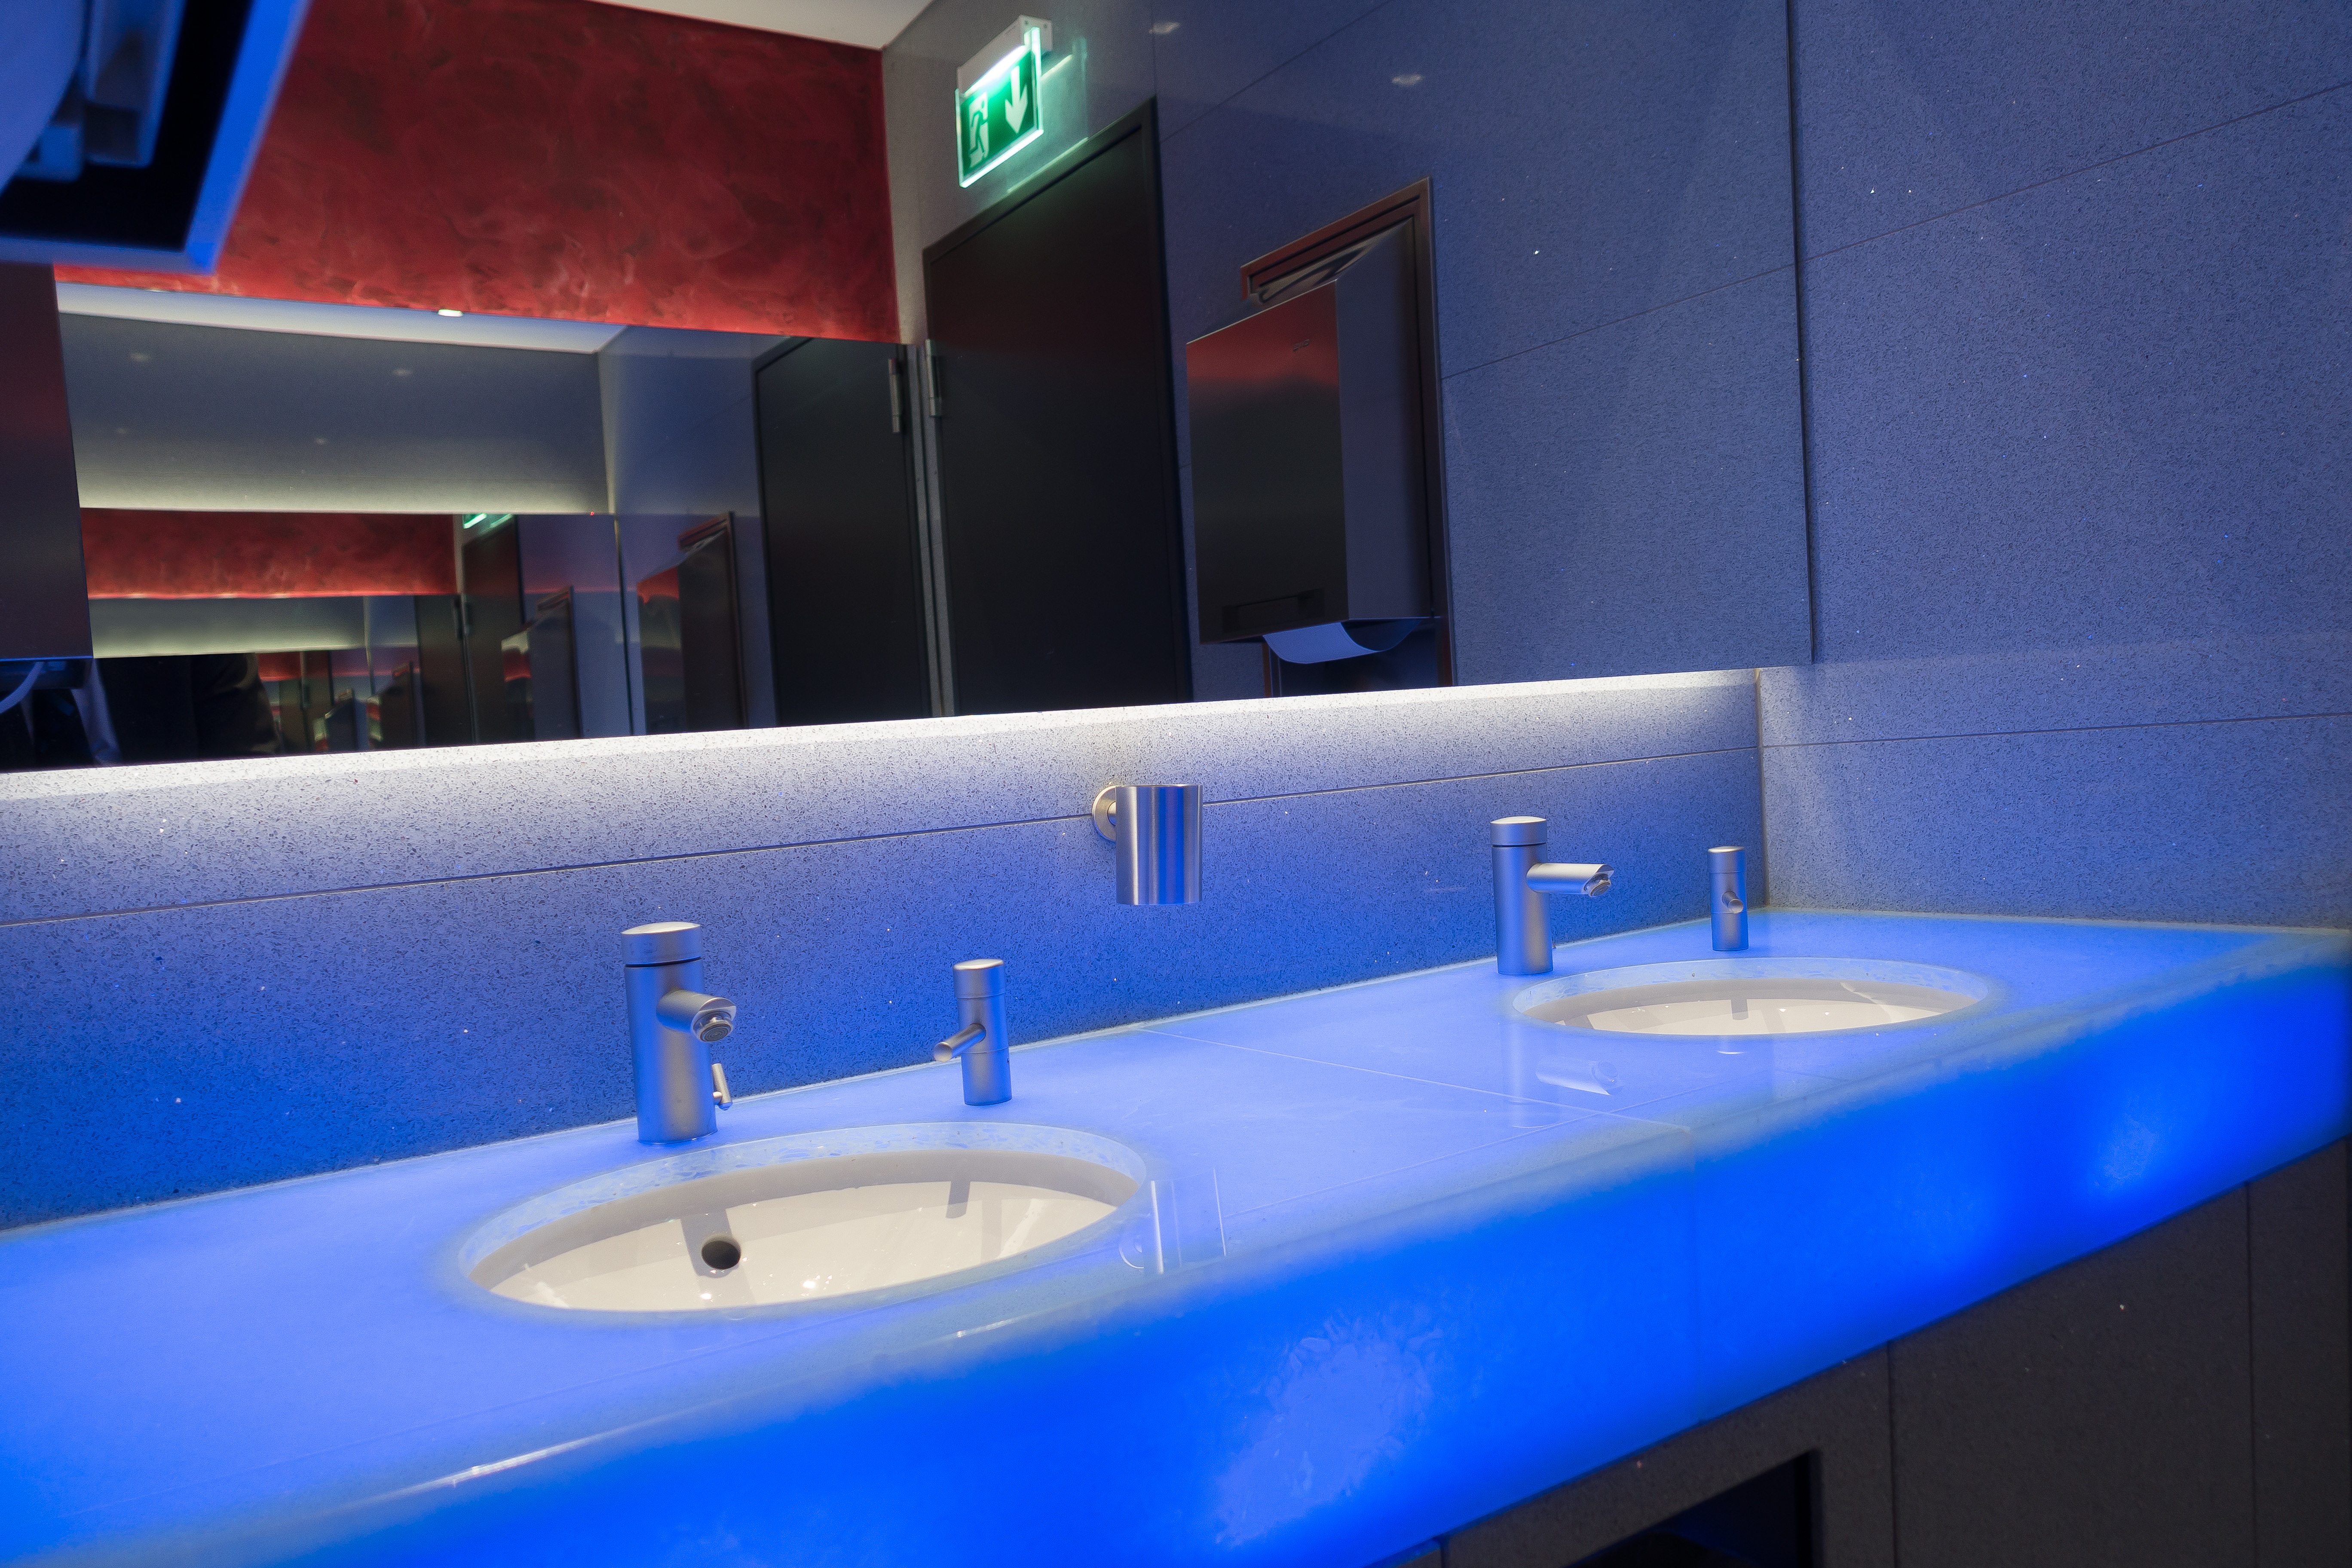 Ванны подсветка: Подсветка в ванной - 50 фото лучших идей освещения в ваннойДекор и дизайн интерьера